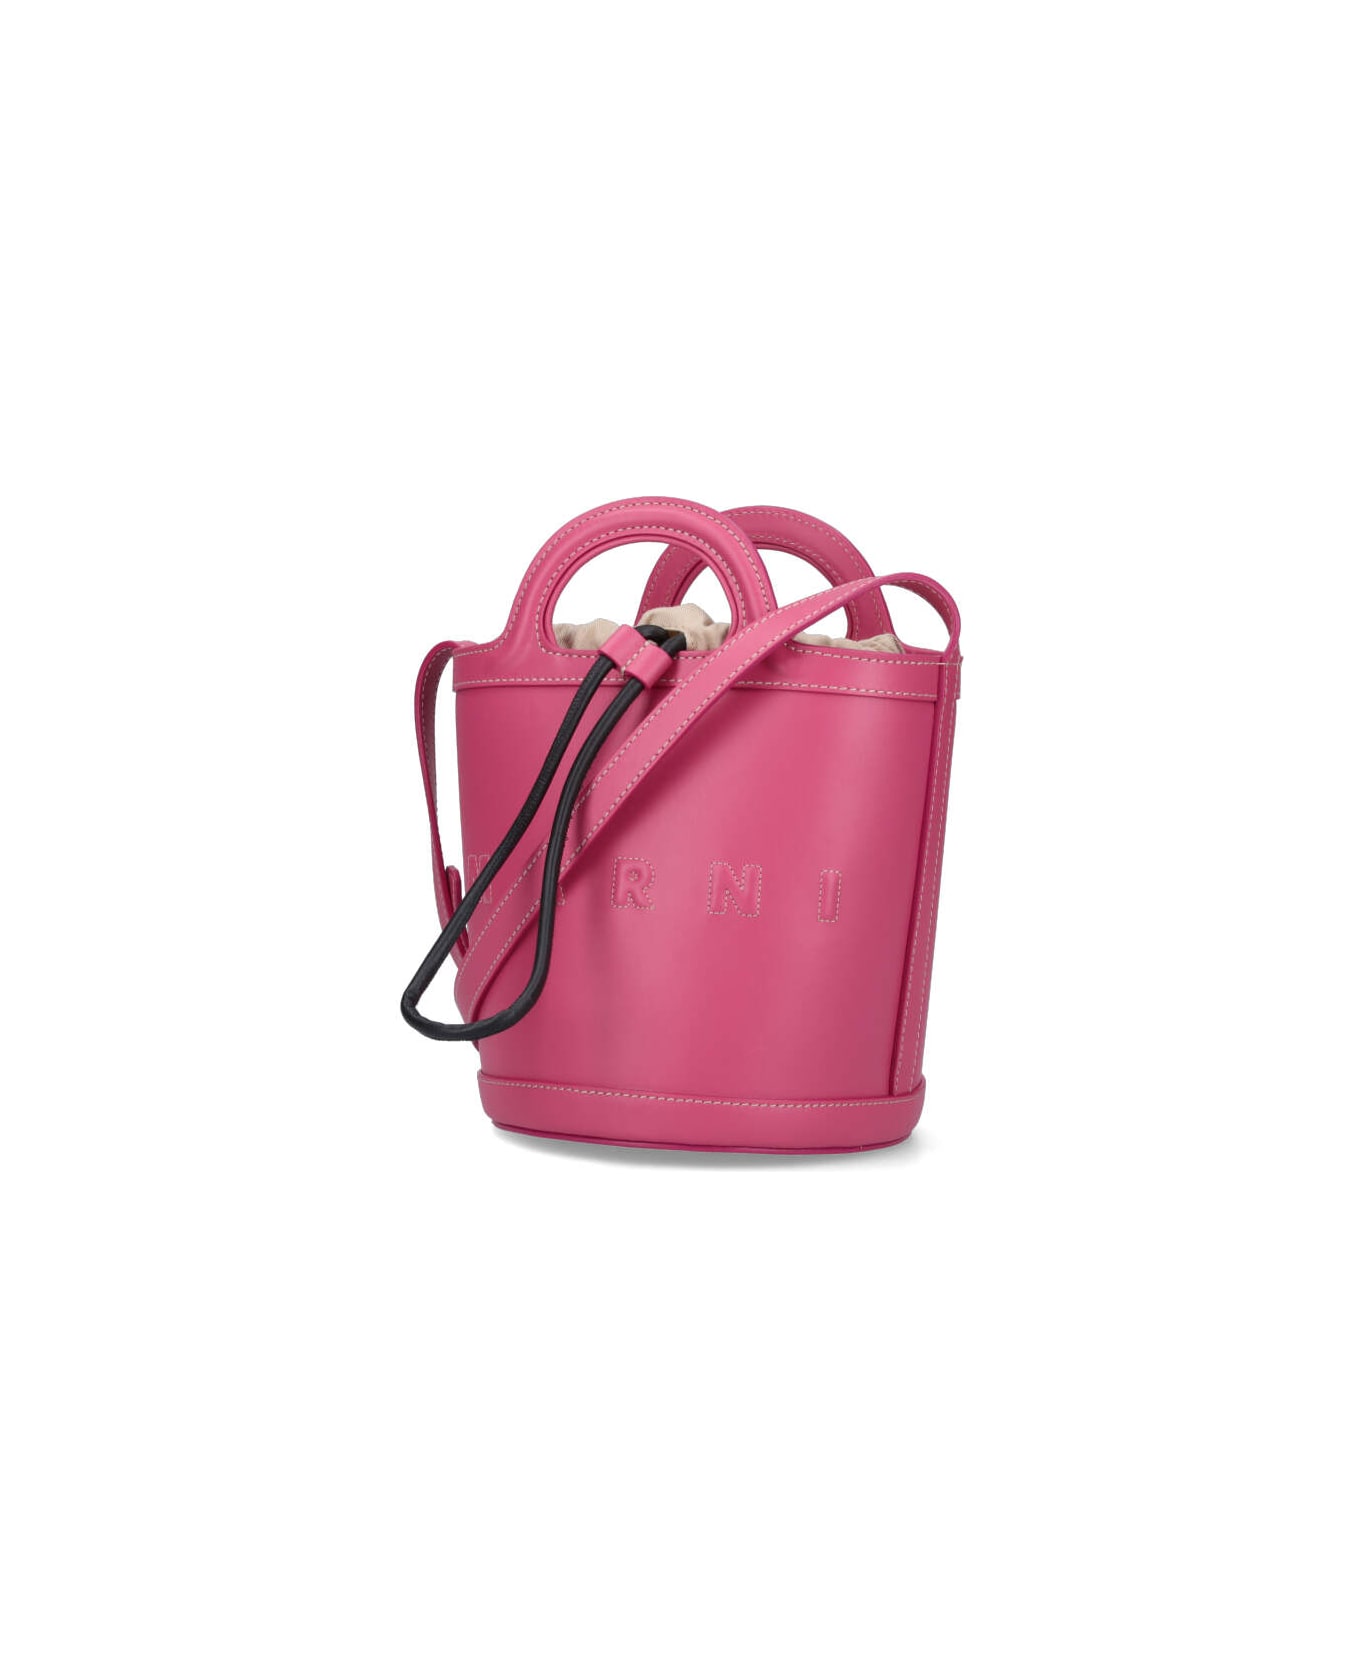 Marni "tropicalia" Bucket Bag - Pink